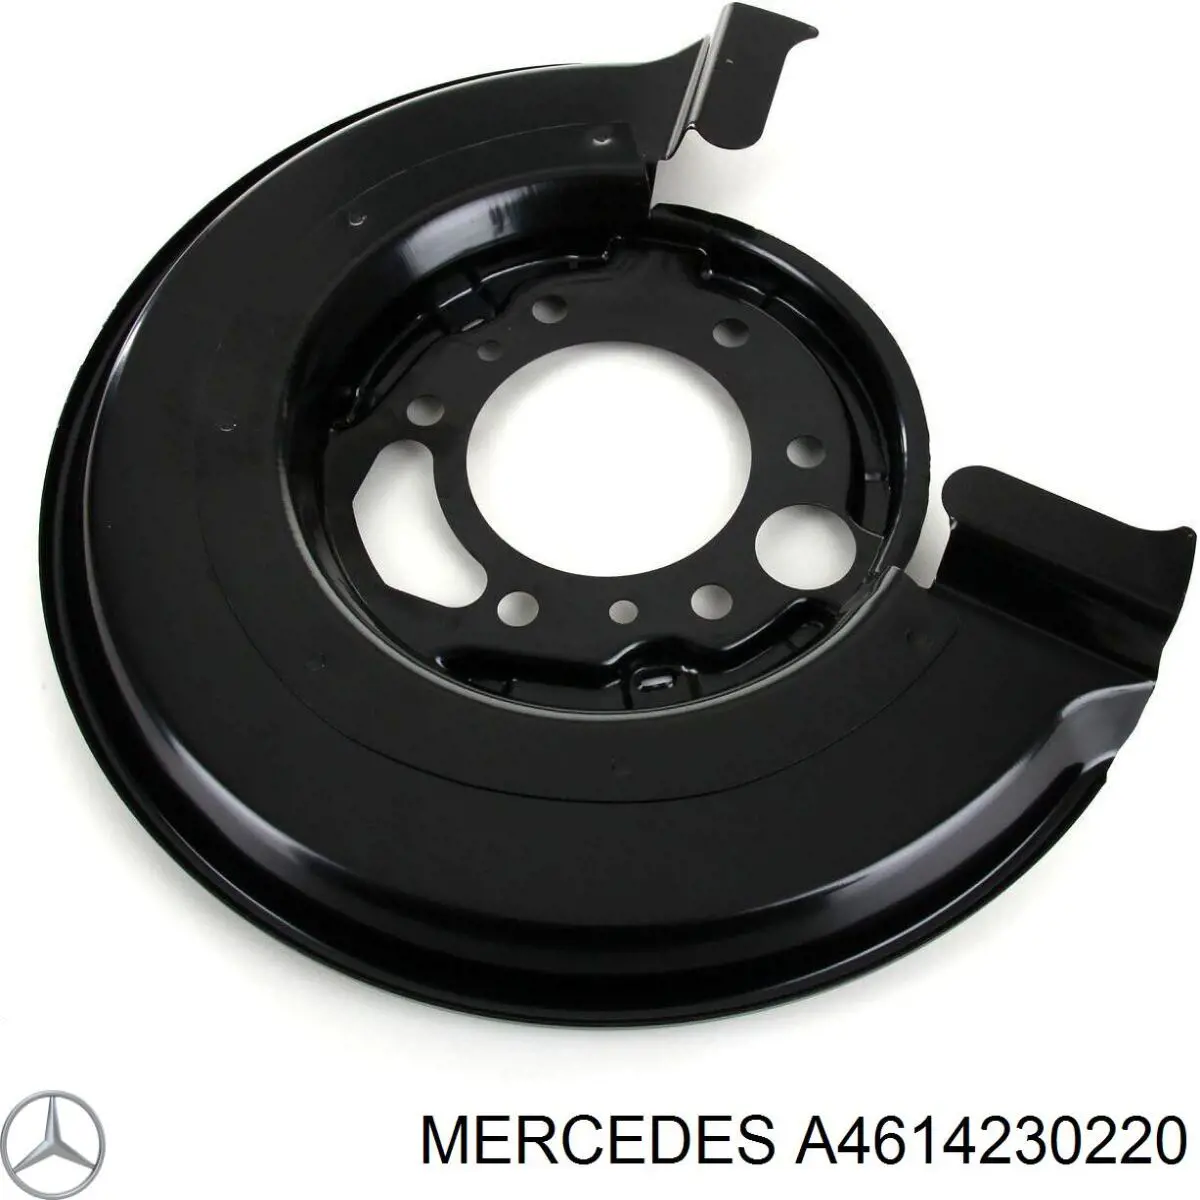 A4614230220 Mercedes proteção direita do freio de disco traseiro